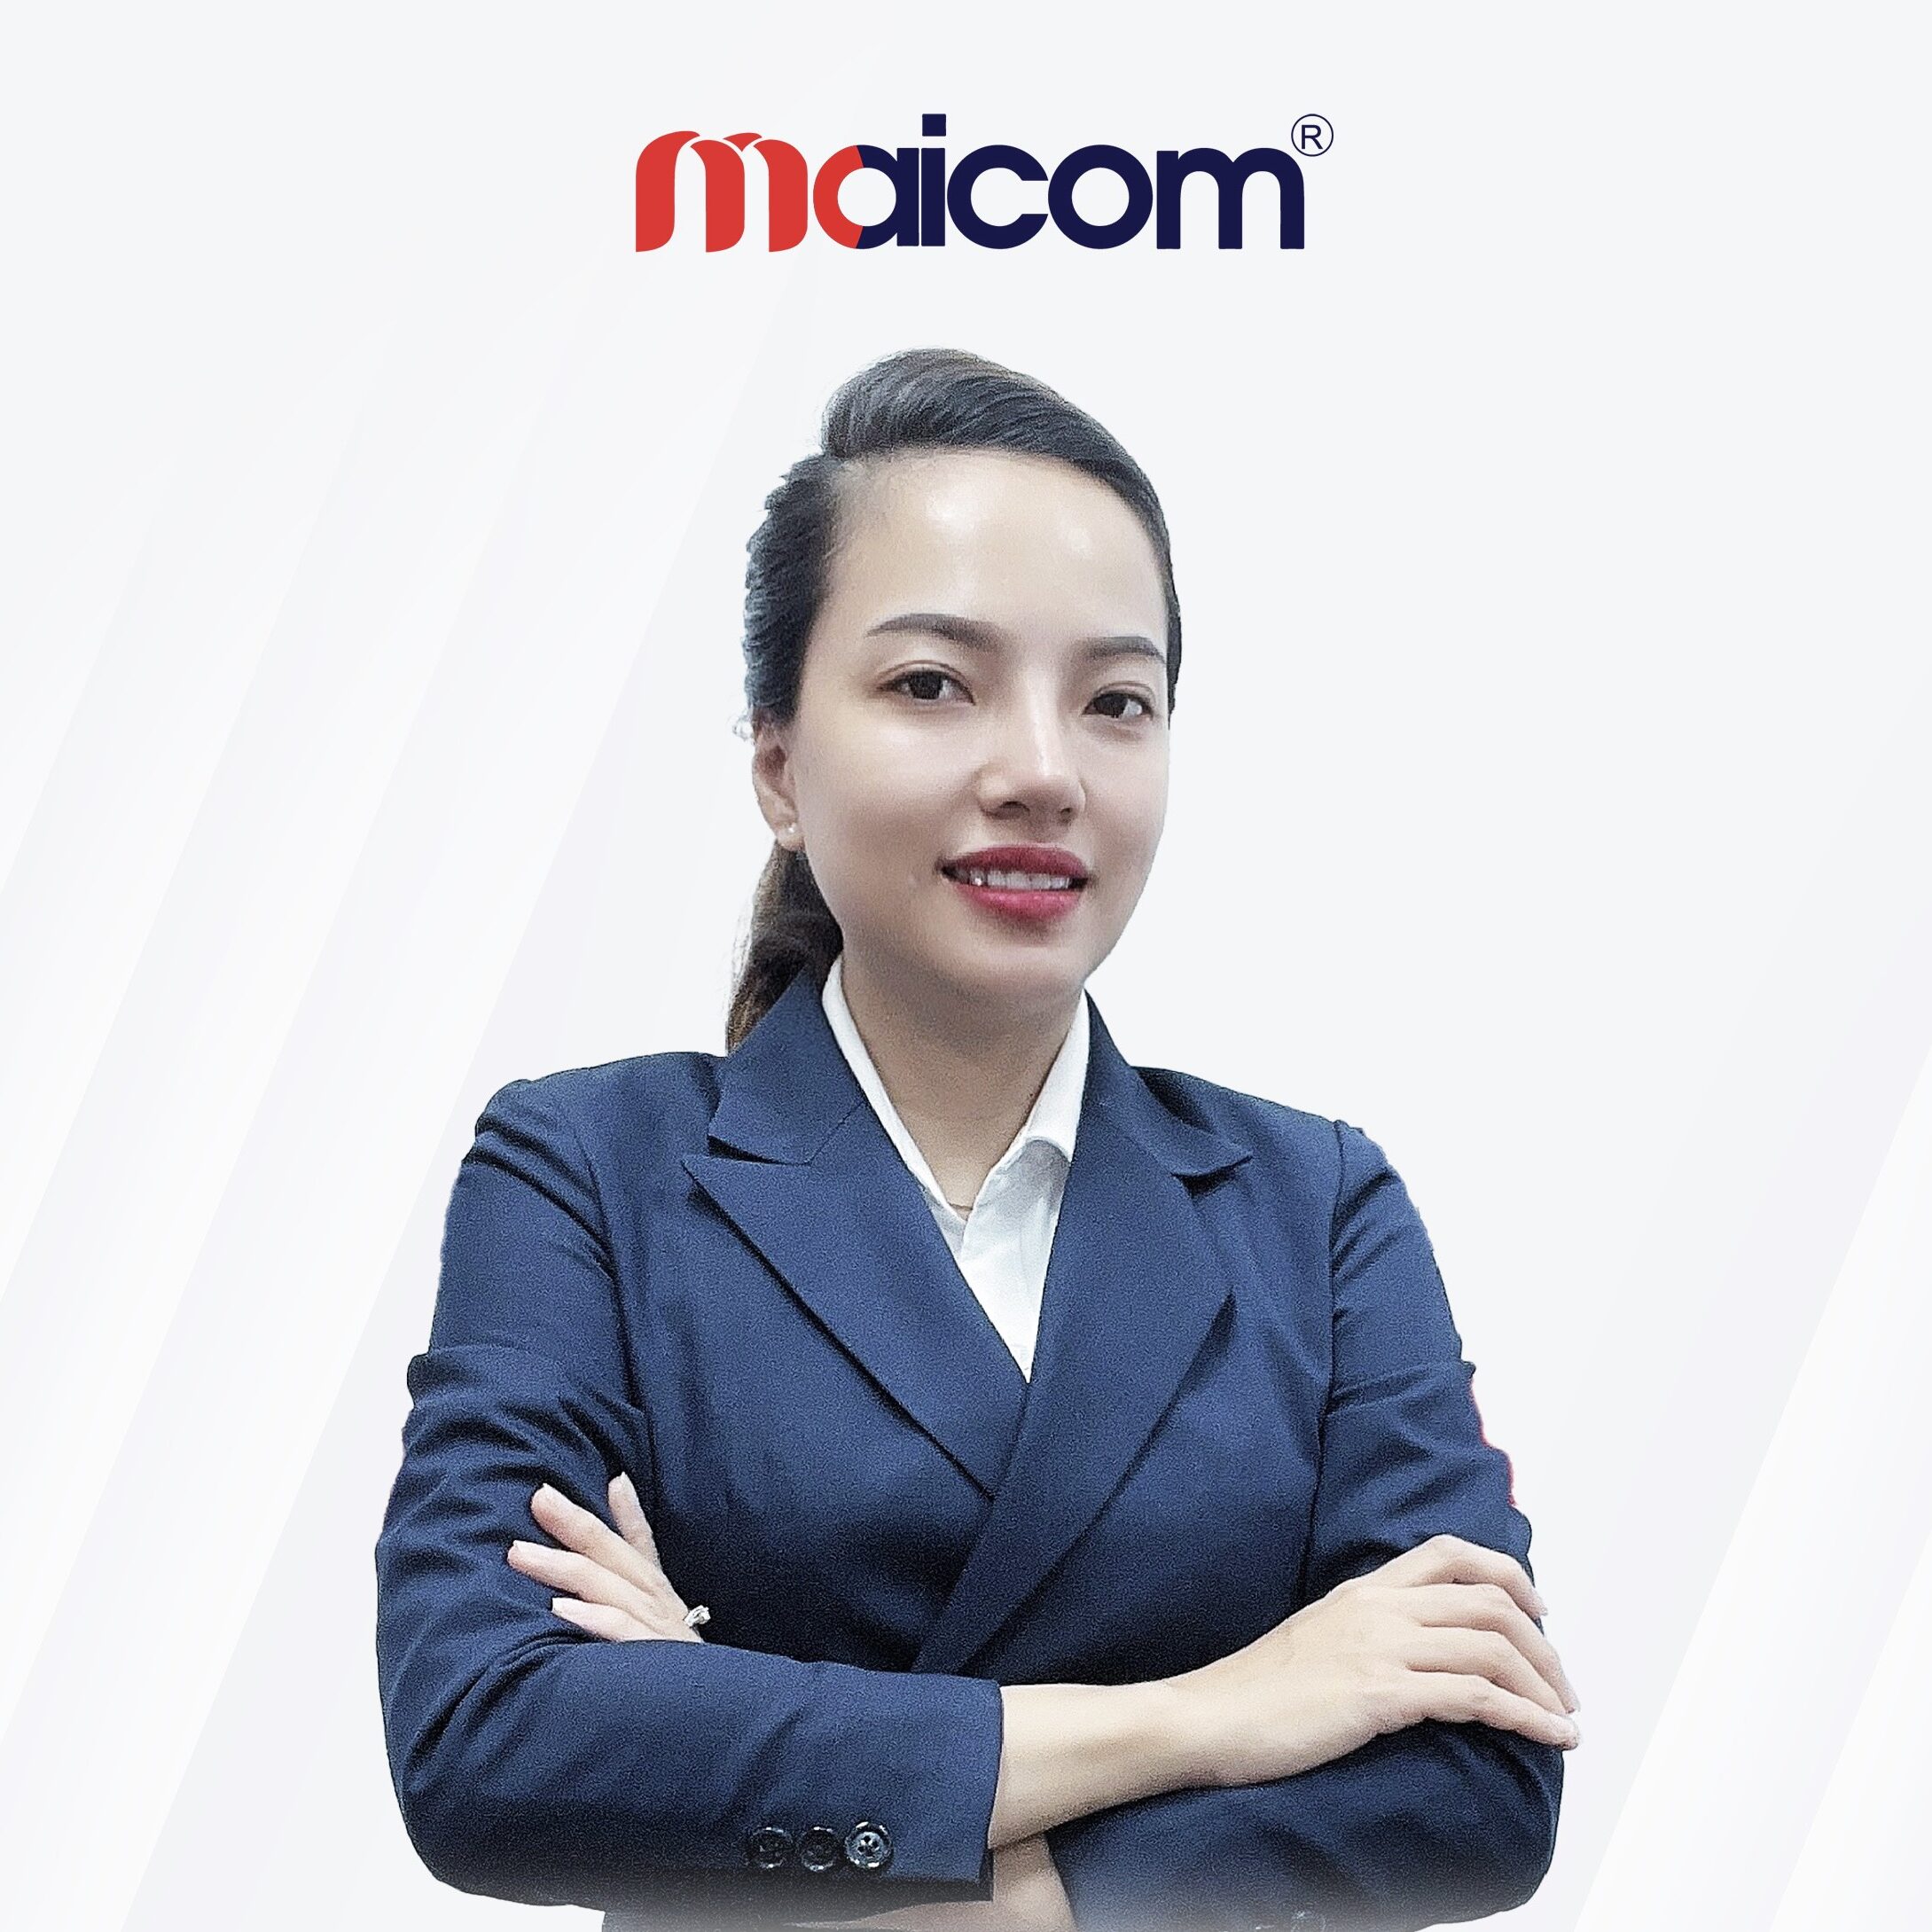 “Cám ơn Maicom Việt Nam rất nhiều. Sau thời gian học tại học viện Maicom Coaching. Mình nhận ra mình mắc rất nhiều sai lầm sơ đẳng trong việc tiếp cận đến khách hàng và chăm sóc khách hàng. Cám ơn những người thầy đã cũng đồng hành và giúp đỡ mình.”